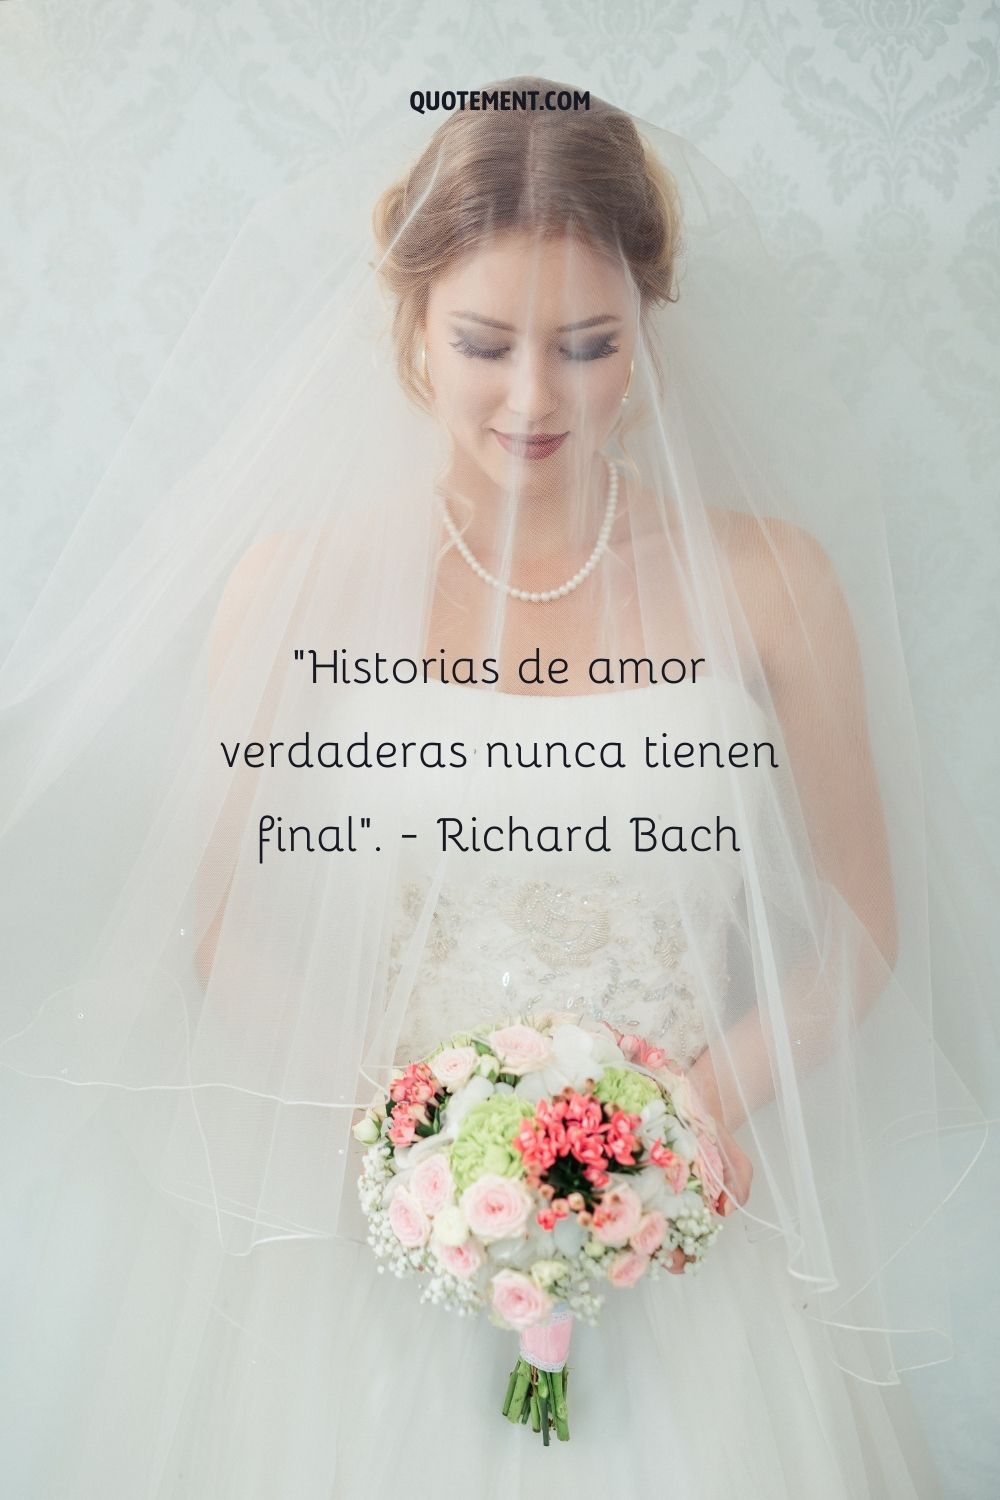 "Las verdaderas historias de amor nunca tienen final". - Richard Bach